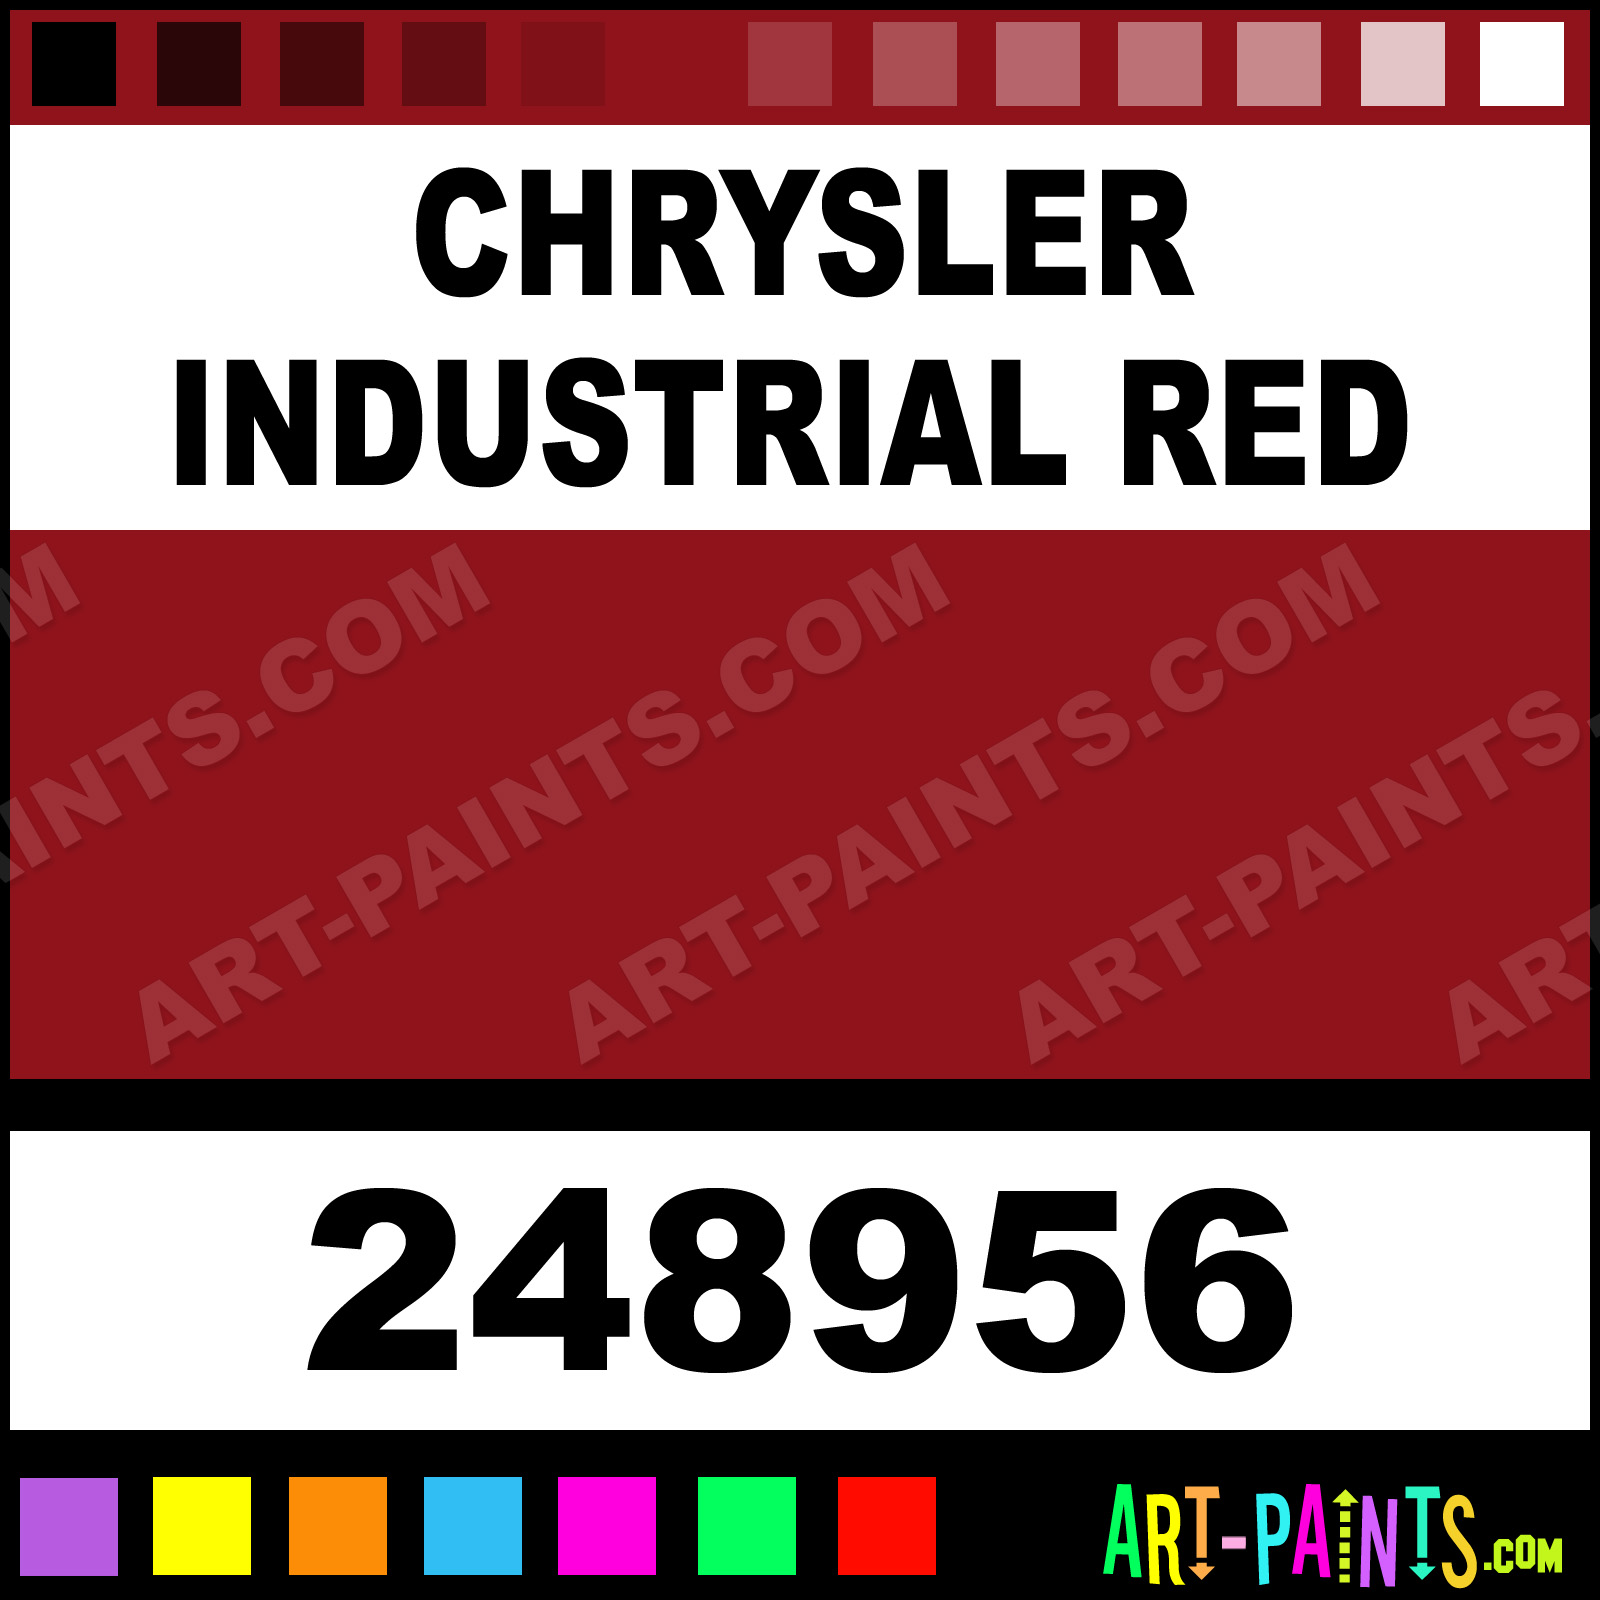 Chrysler Industrial Red Engine Enamel Enamel Paints - 248956 - Chrysler